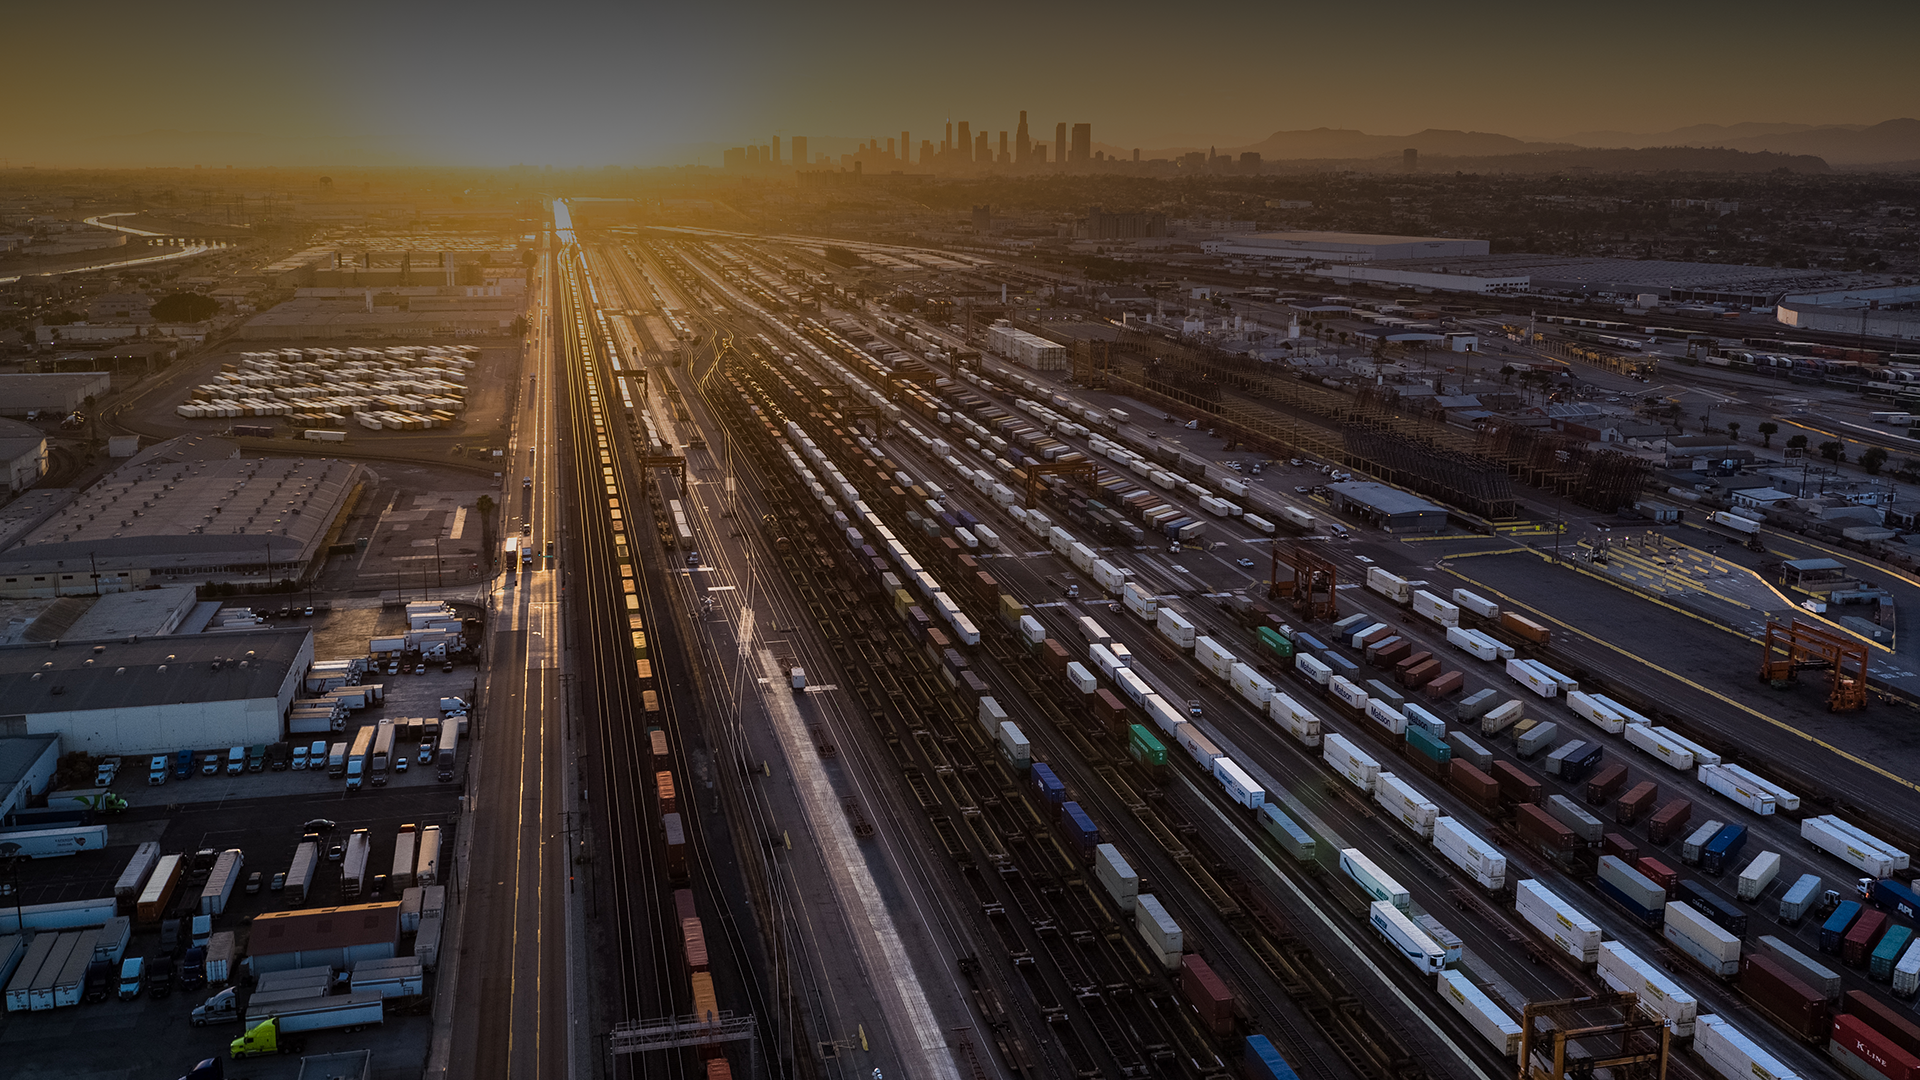 Sonnenaufgang über einem Güterbahnhof